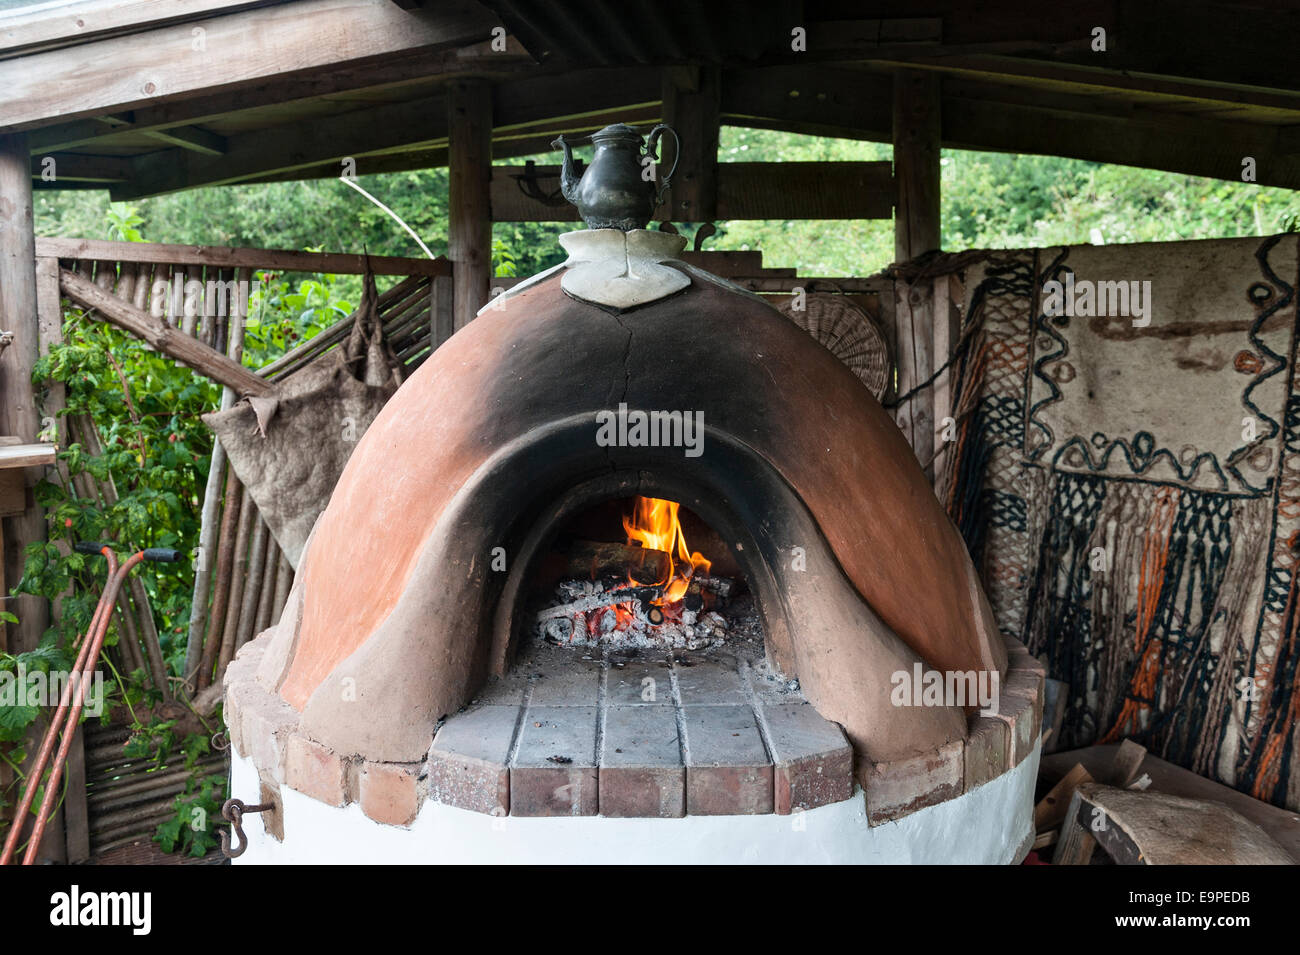 Pizzaofen aus lehm -Fotos und -Bildmaterial in hoher Auflösung – Alamy